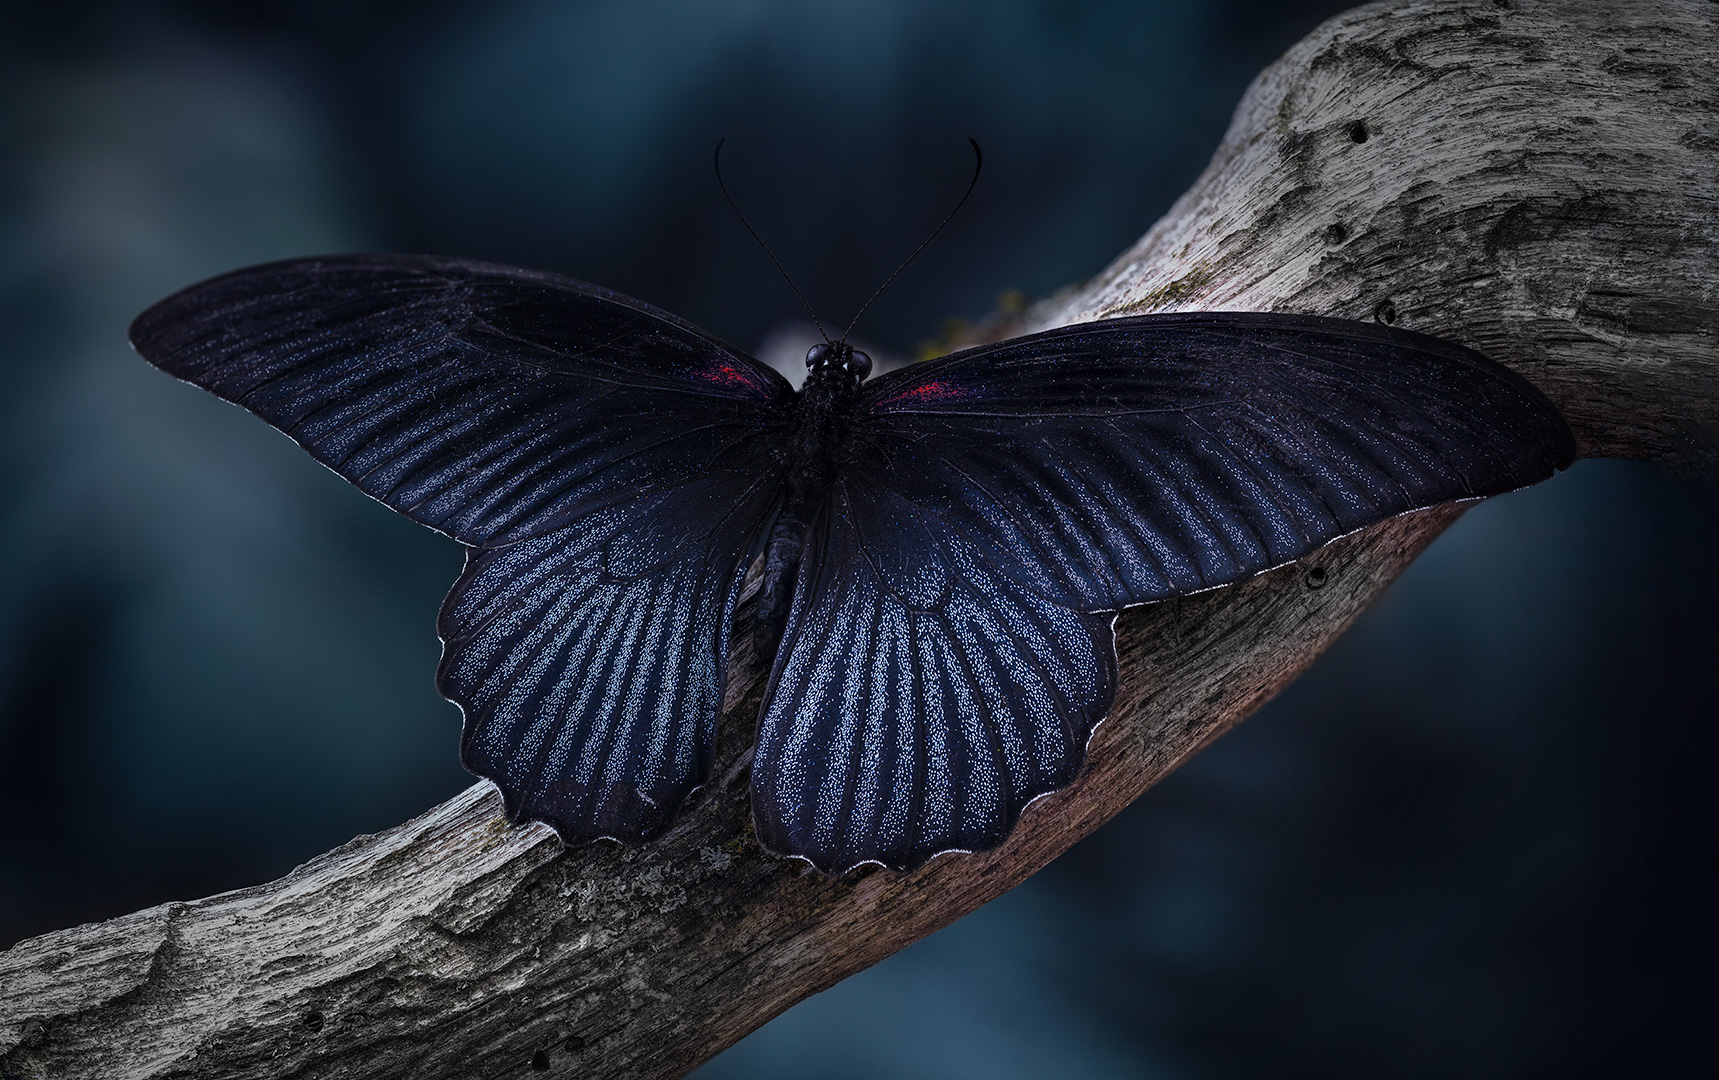 Papilio memnon...